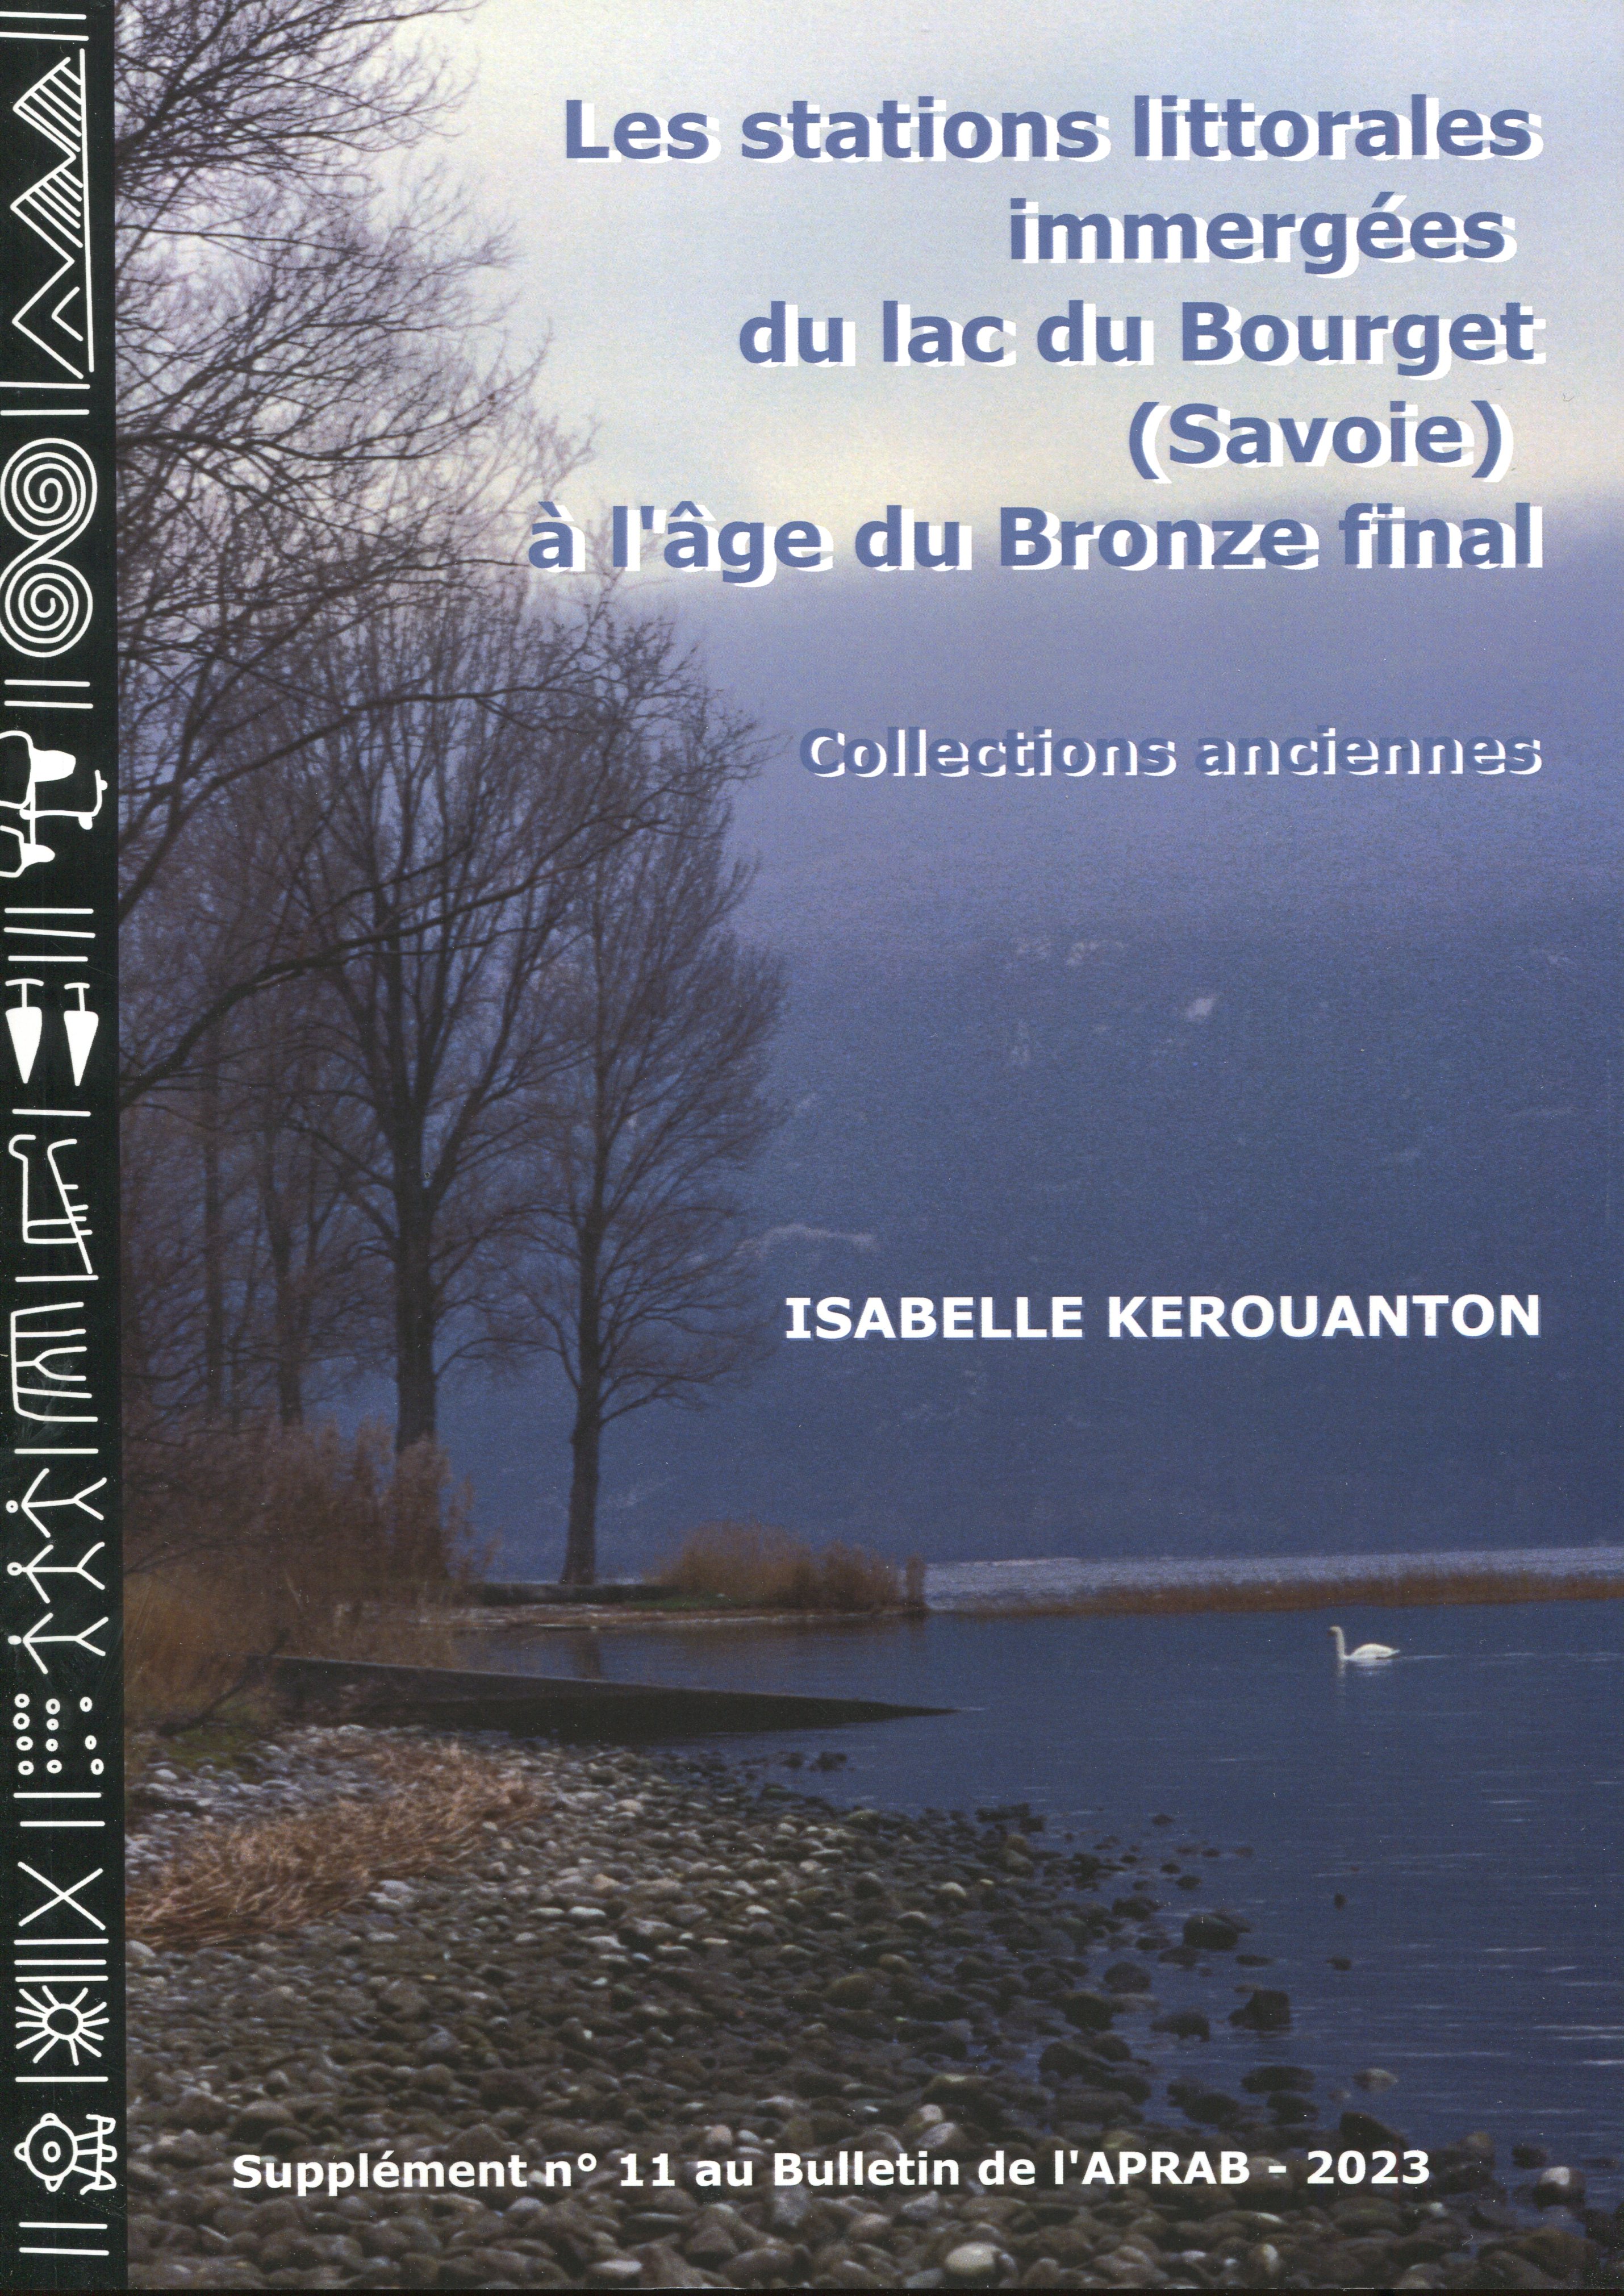 Les stations littorales immergées du lac du Bourget (Savoie) à l'âge du Bronze final. Collections anciennes, (Supplément n°11 au Bulletin de l'APRAB), 2023, 266 p.